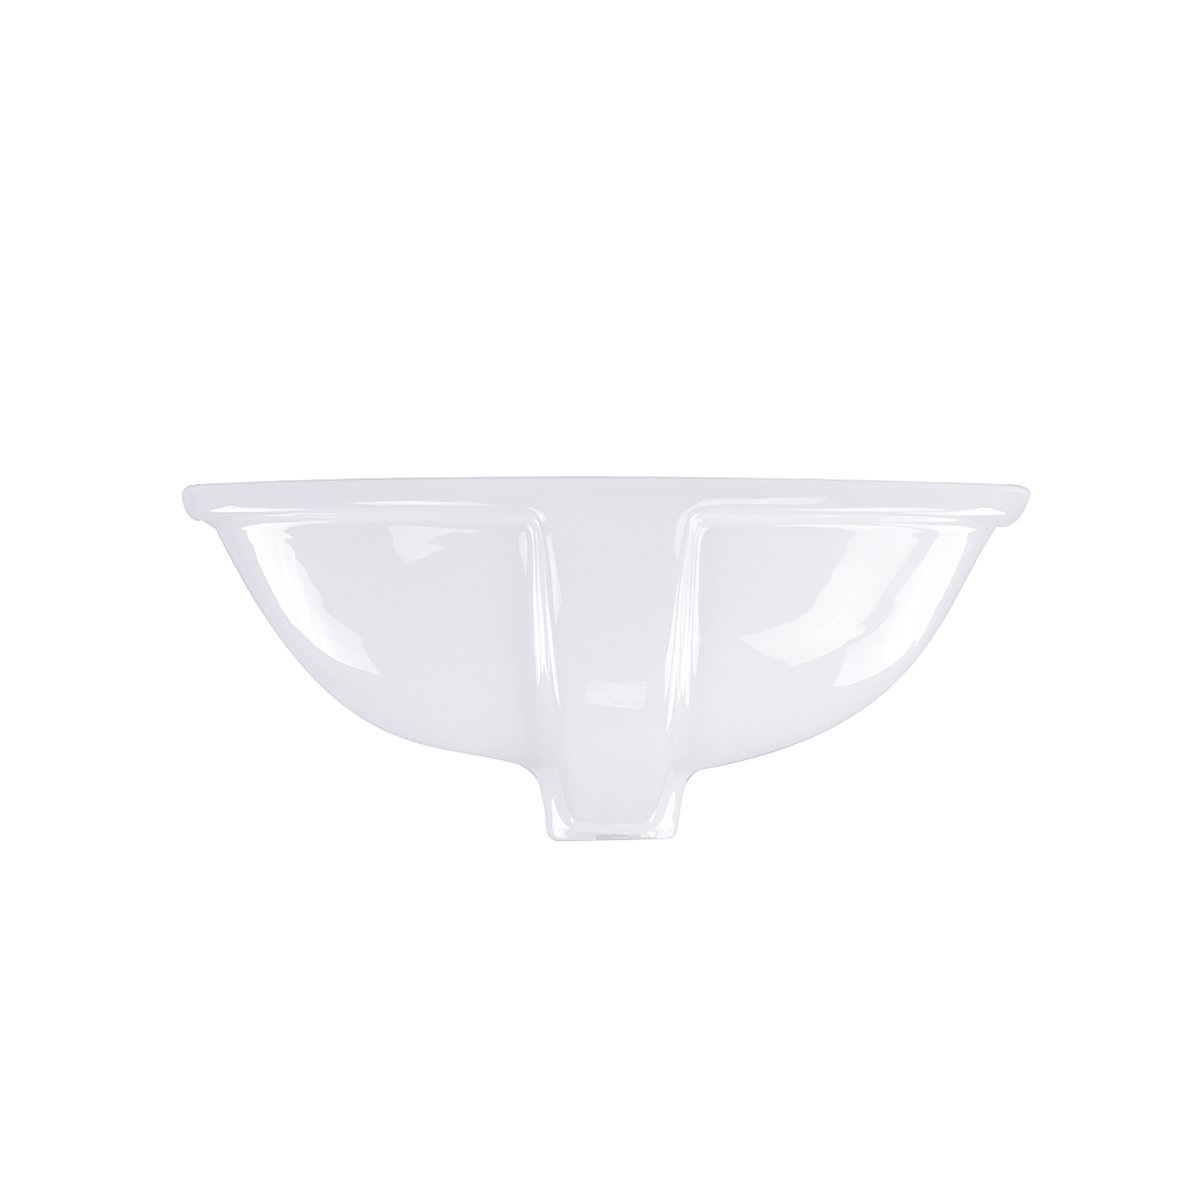 Nantucket Glazed Bottom Undermount Oval Ceramic Sink In White - GB-17x14-W